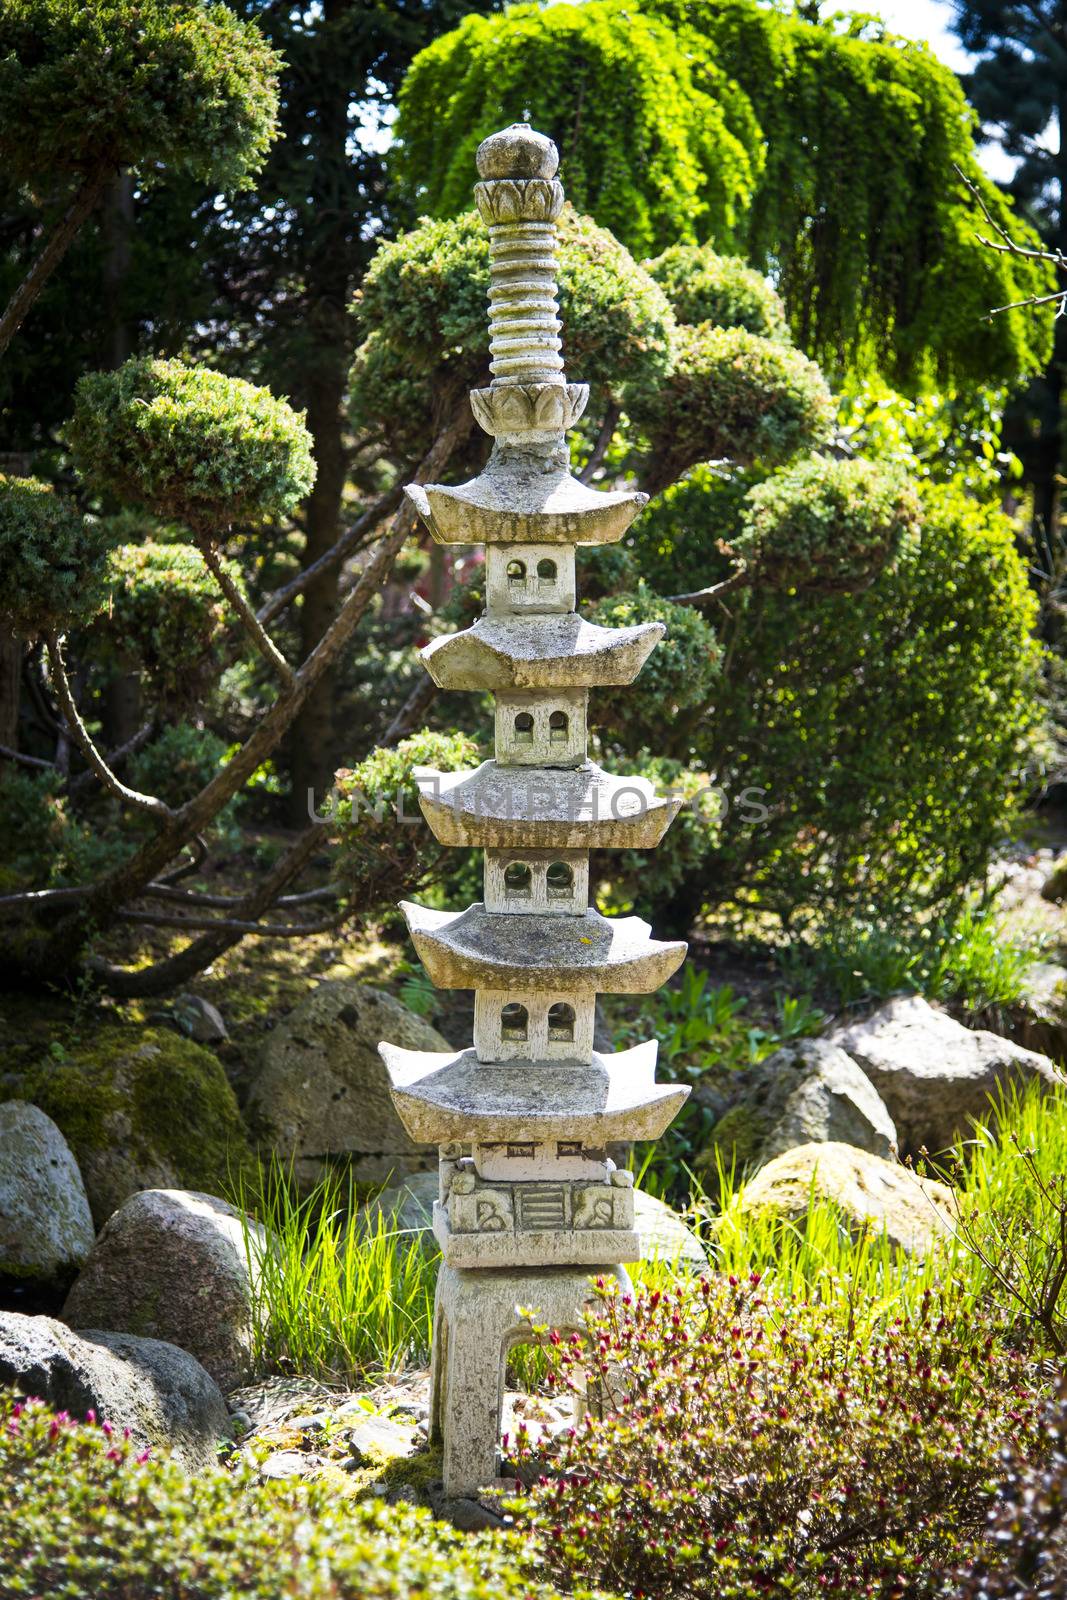 Sculpture in japanese garden by furzyk73